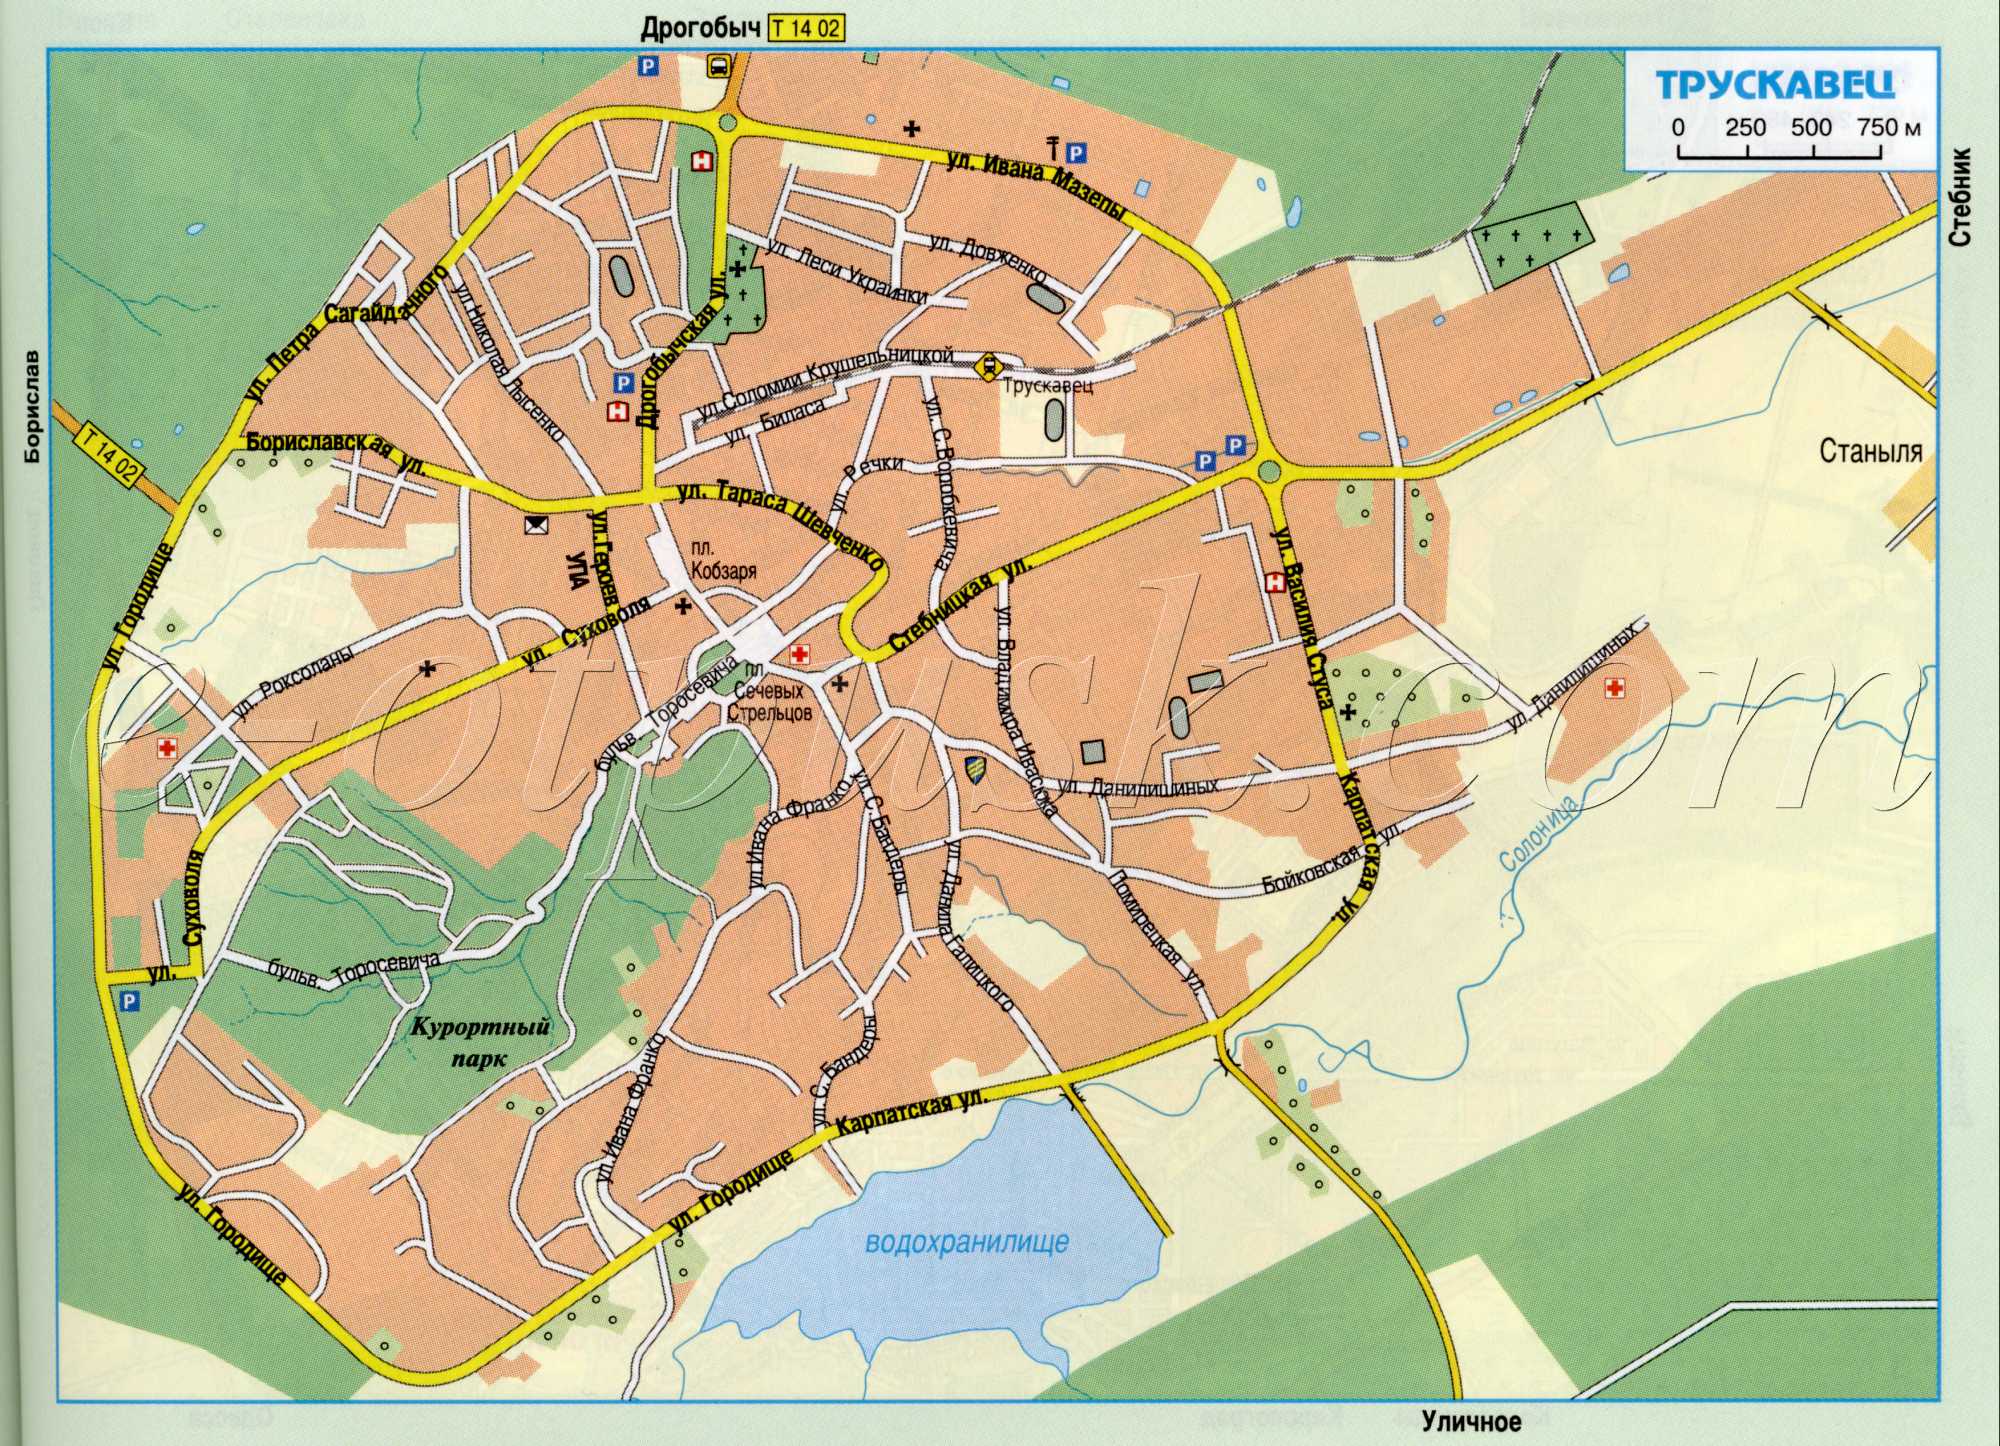 Карта Трускавца автомобильная (Украина авто дороги г.Трускавец). подробная карта автомобильных дорог скачать бесплатно